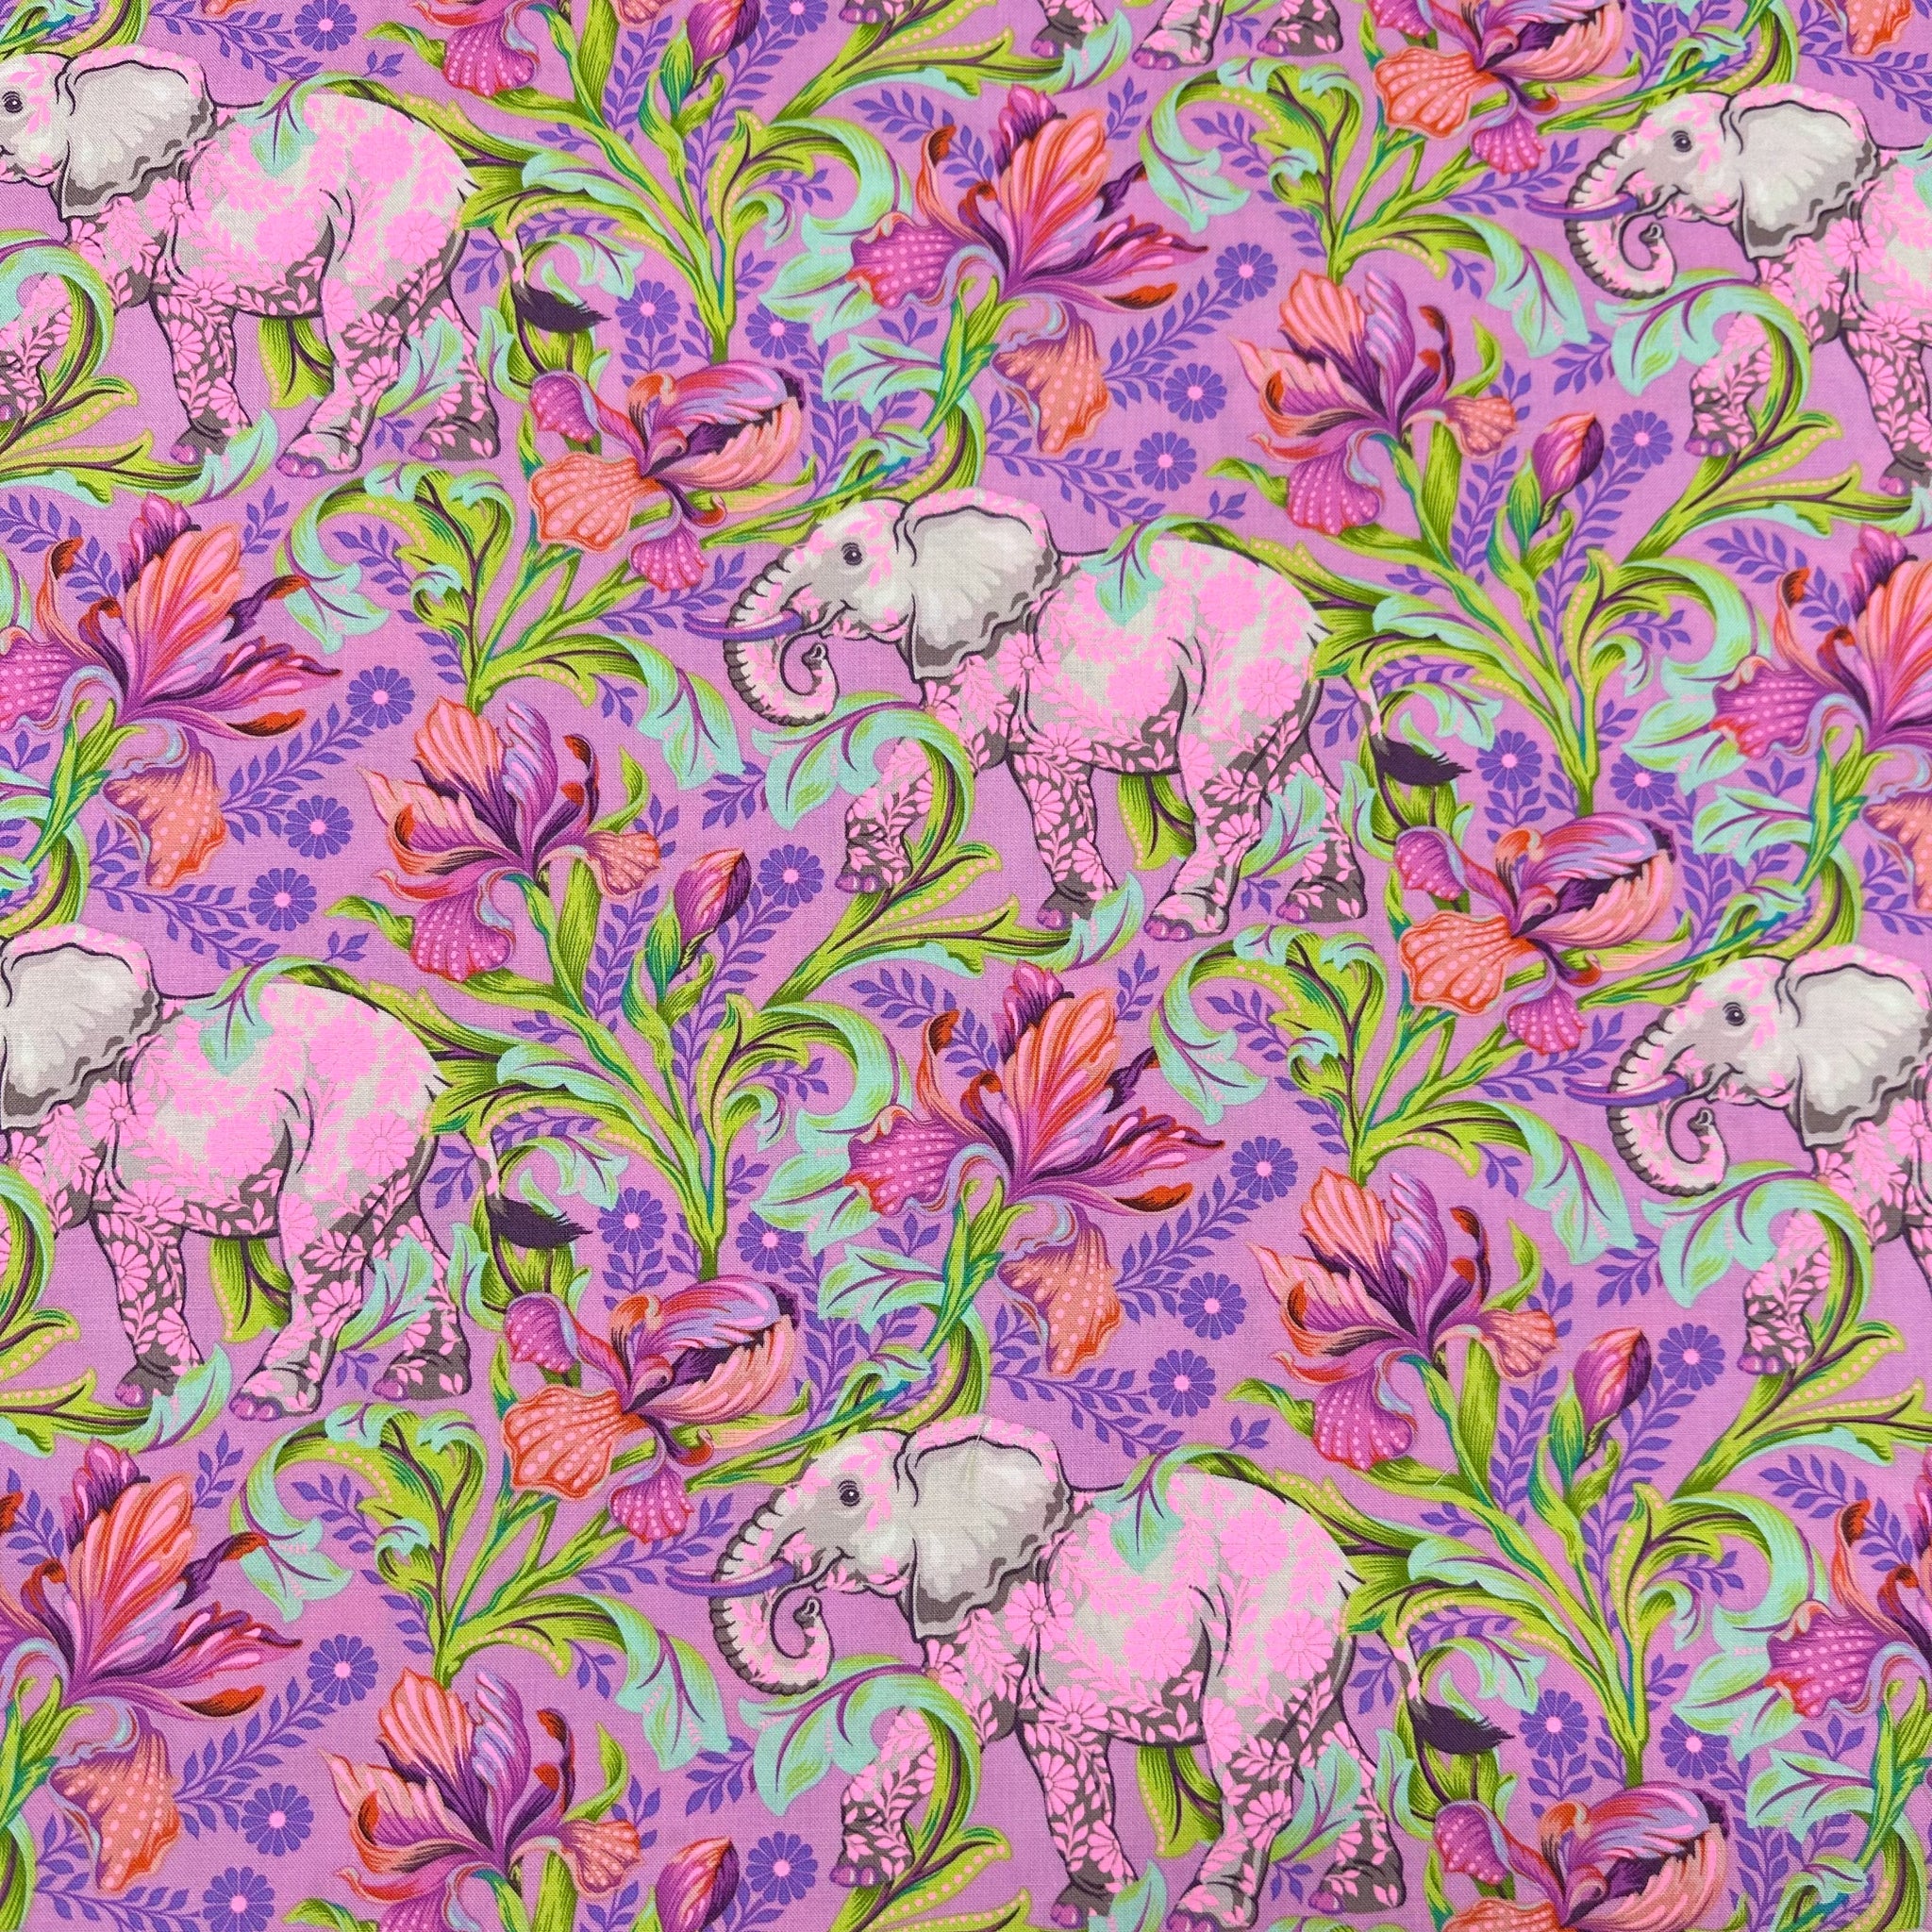 Fabric - All Ears - Cosmic - Everglow - Tula Pink - Half yard